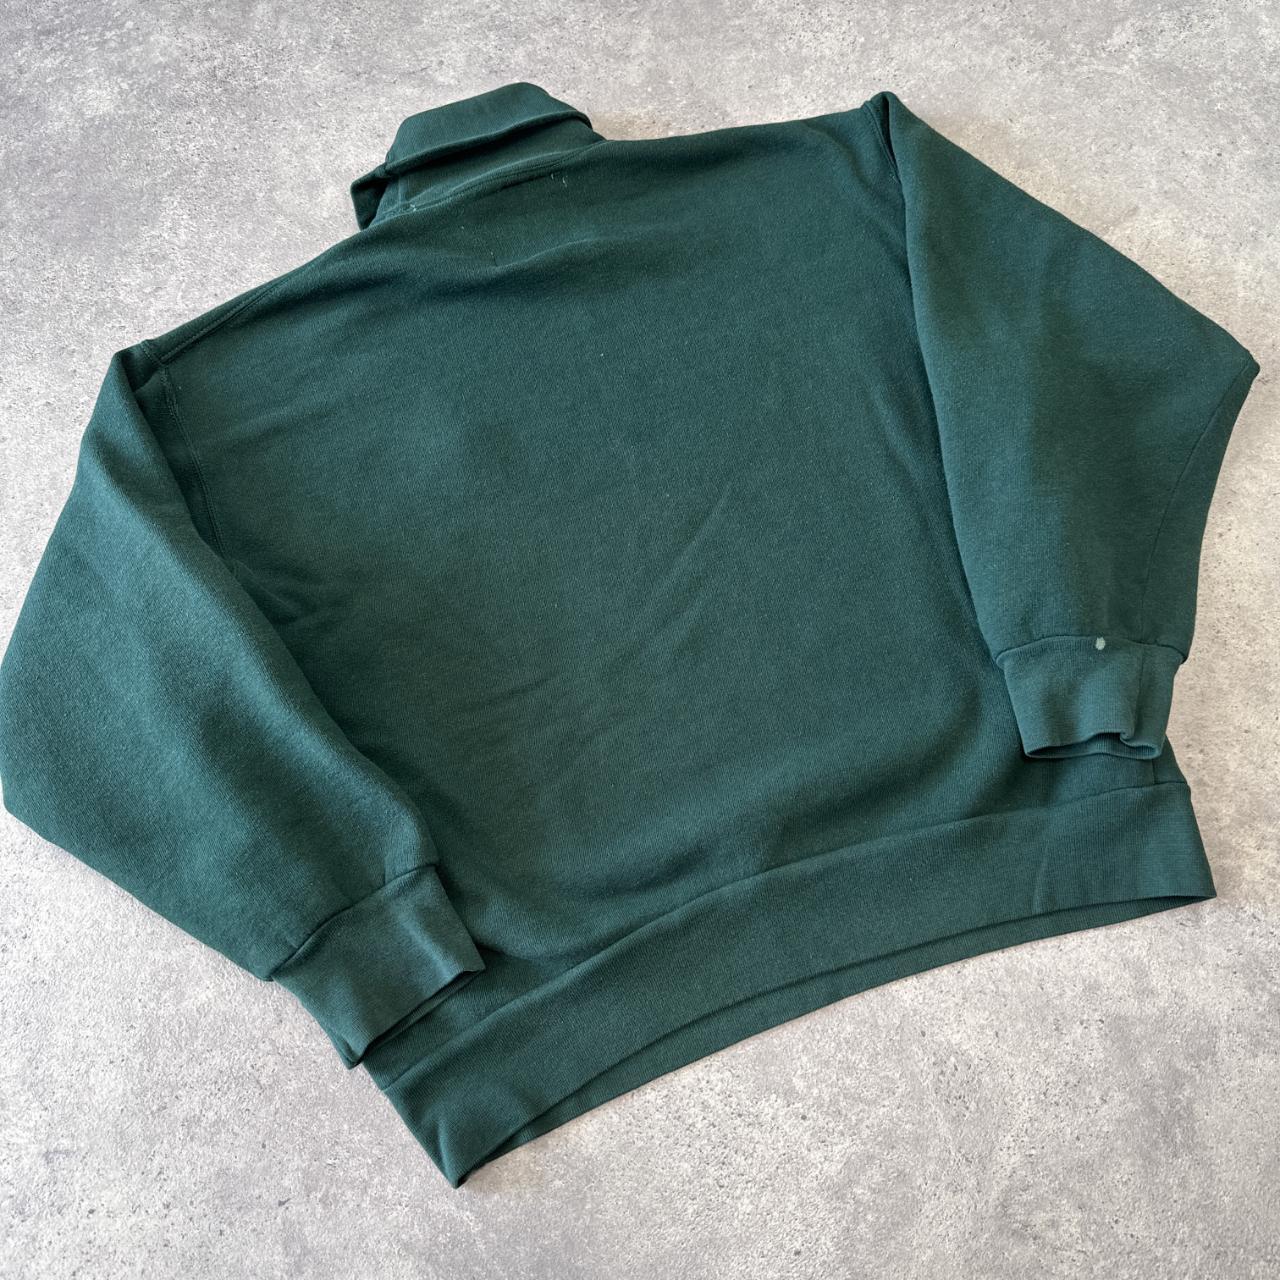 Kappa Women's Green Sweatshirt | Depop